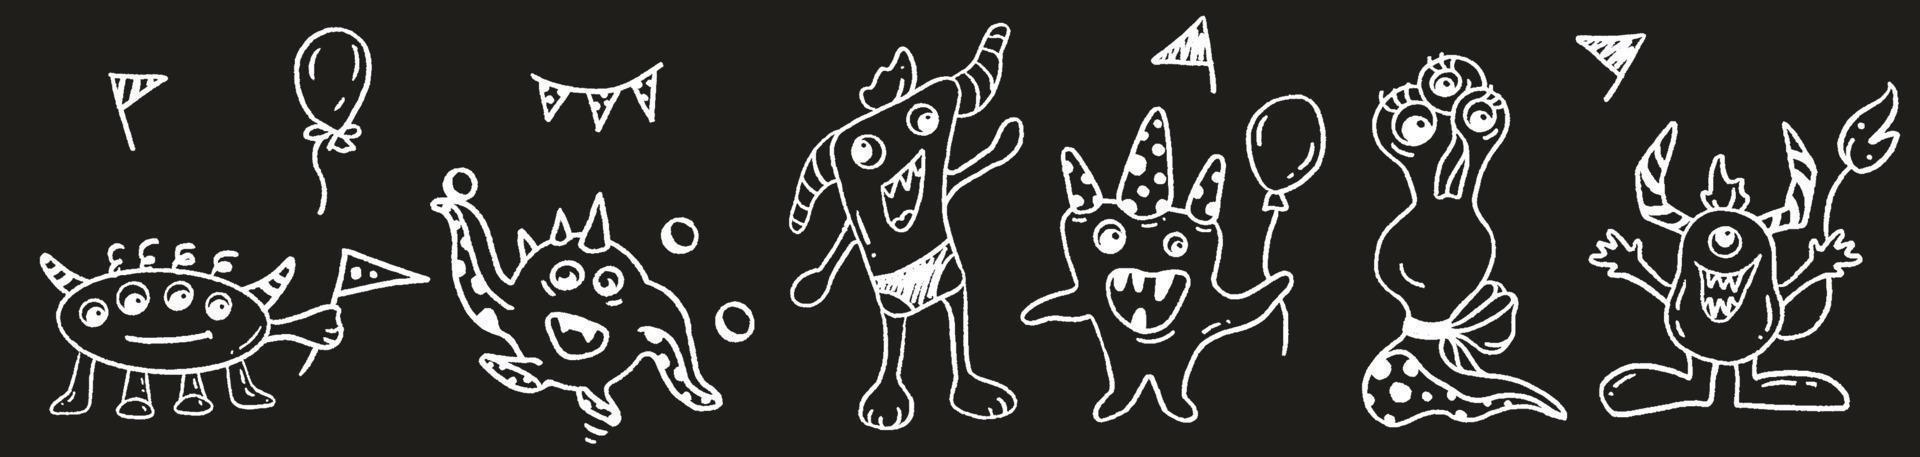 illustration vectorielle dessinée à la main en noir et blanc de 6 monstres drôles vecteur